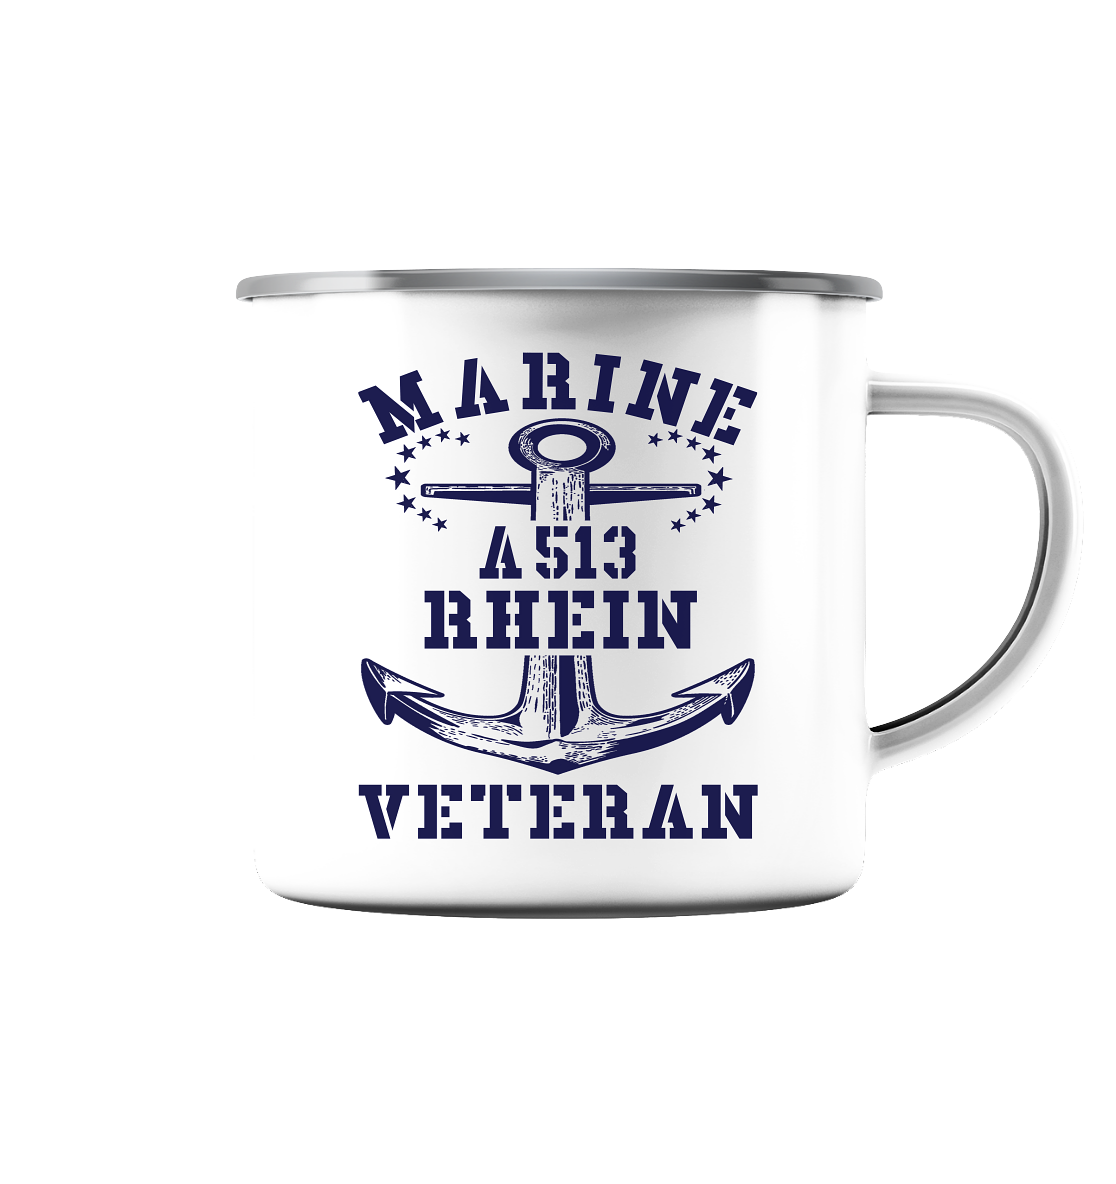 Tender A513 RHEIN Marine Veteran - Emaille Tasse (Silber)